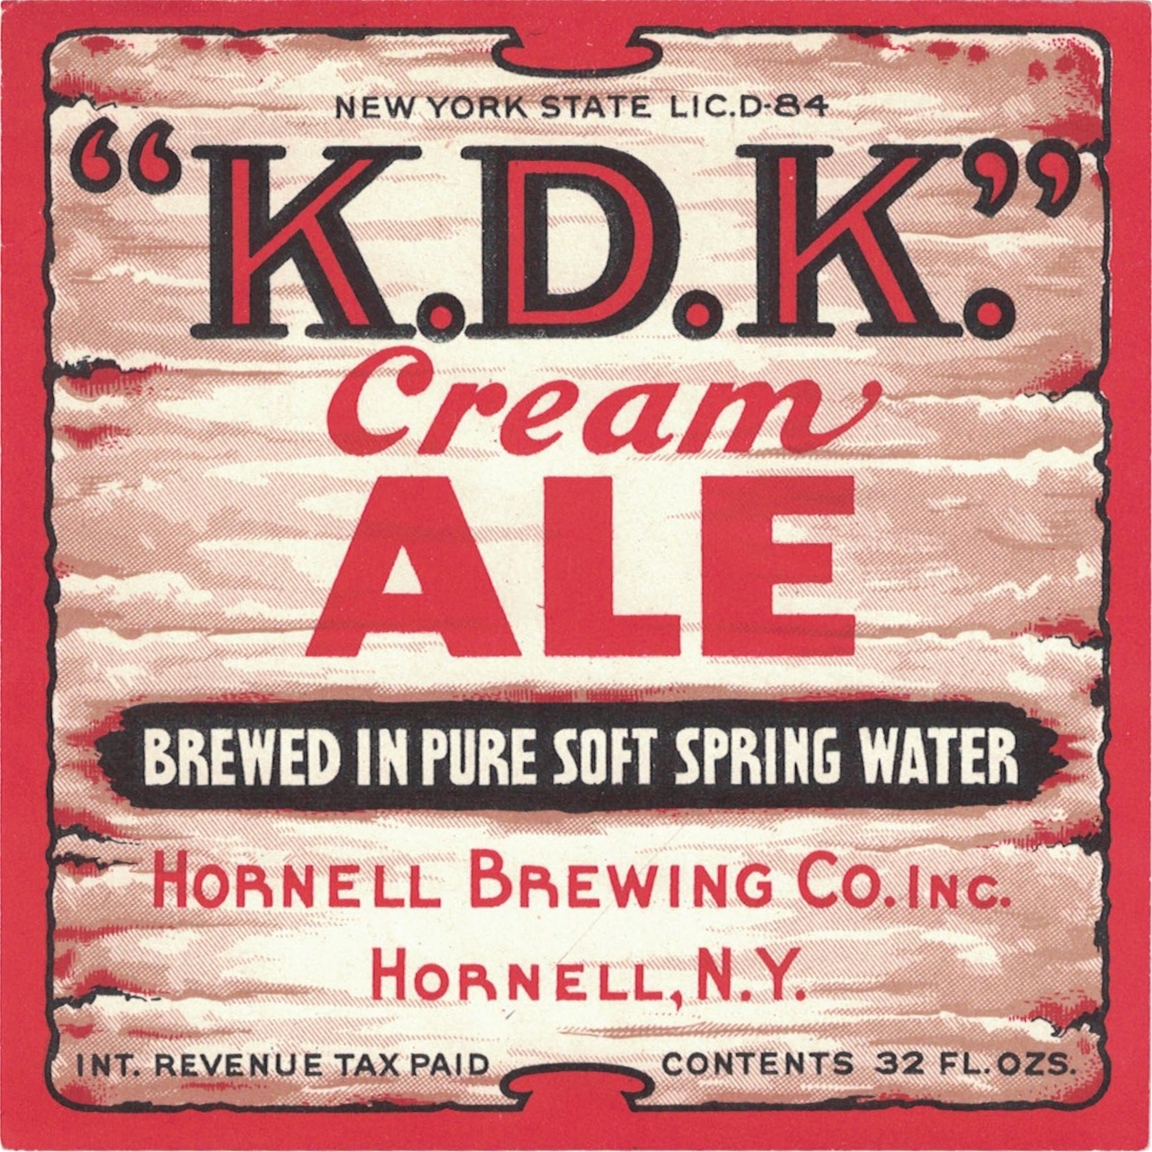 K.D.K Cream Ale IRTP Beer Label